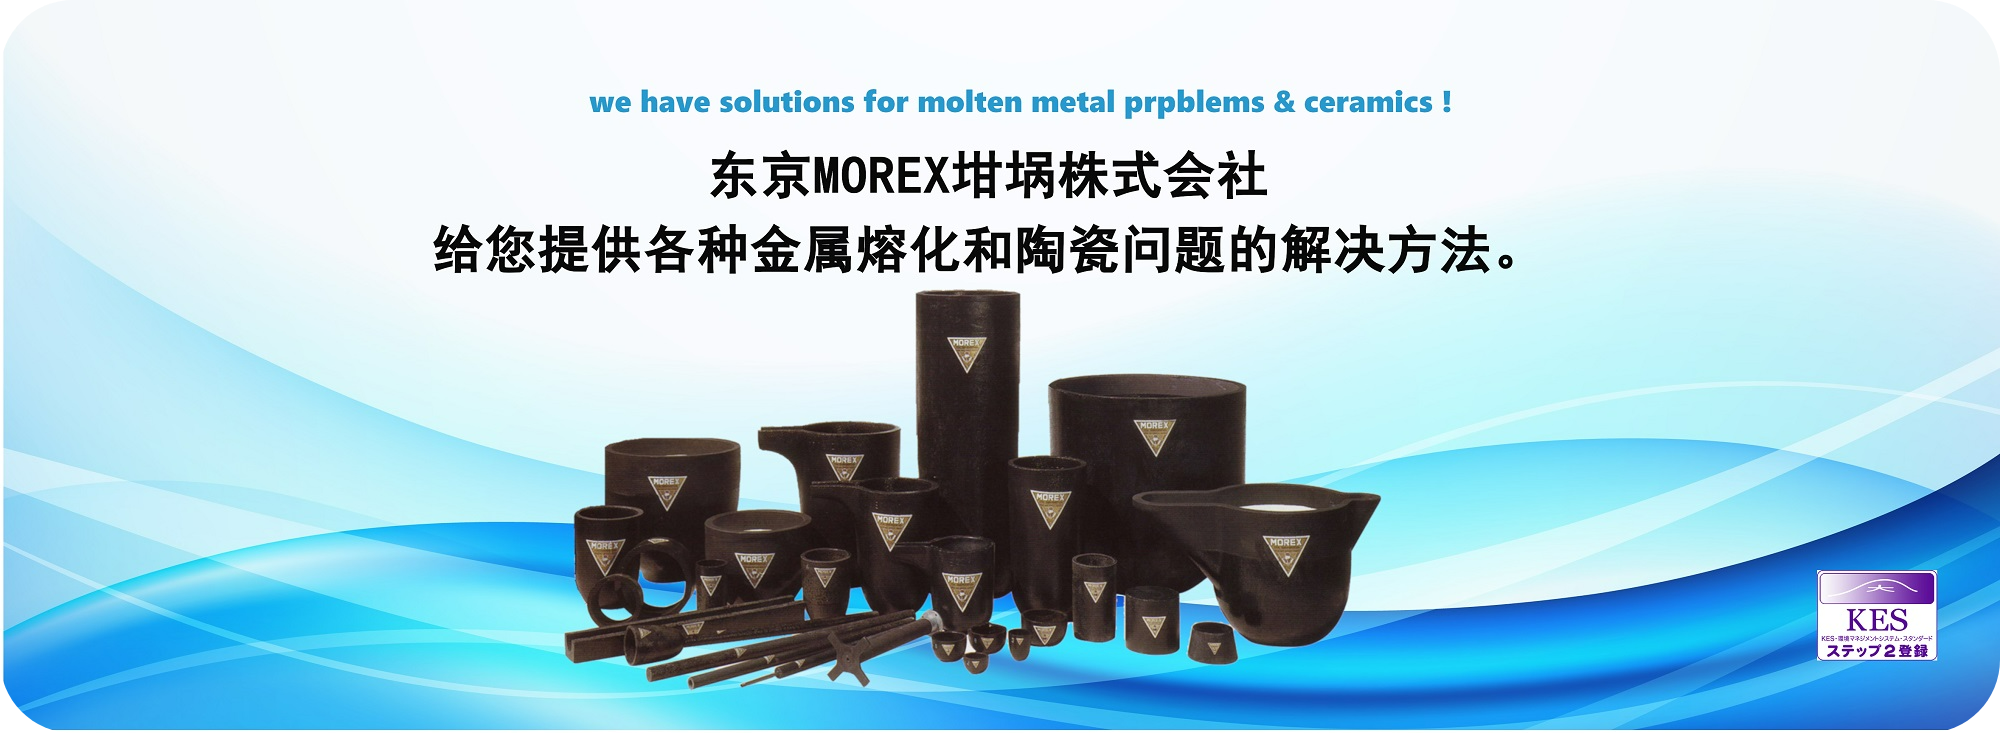 东京MOREX坩埚株式会社给您提供各种金属熔化和陶瓷问题的解决方法。